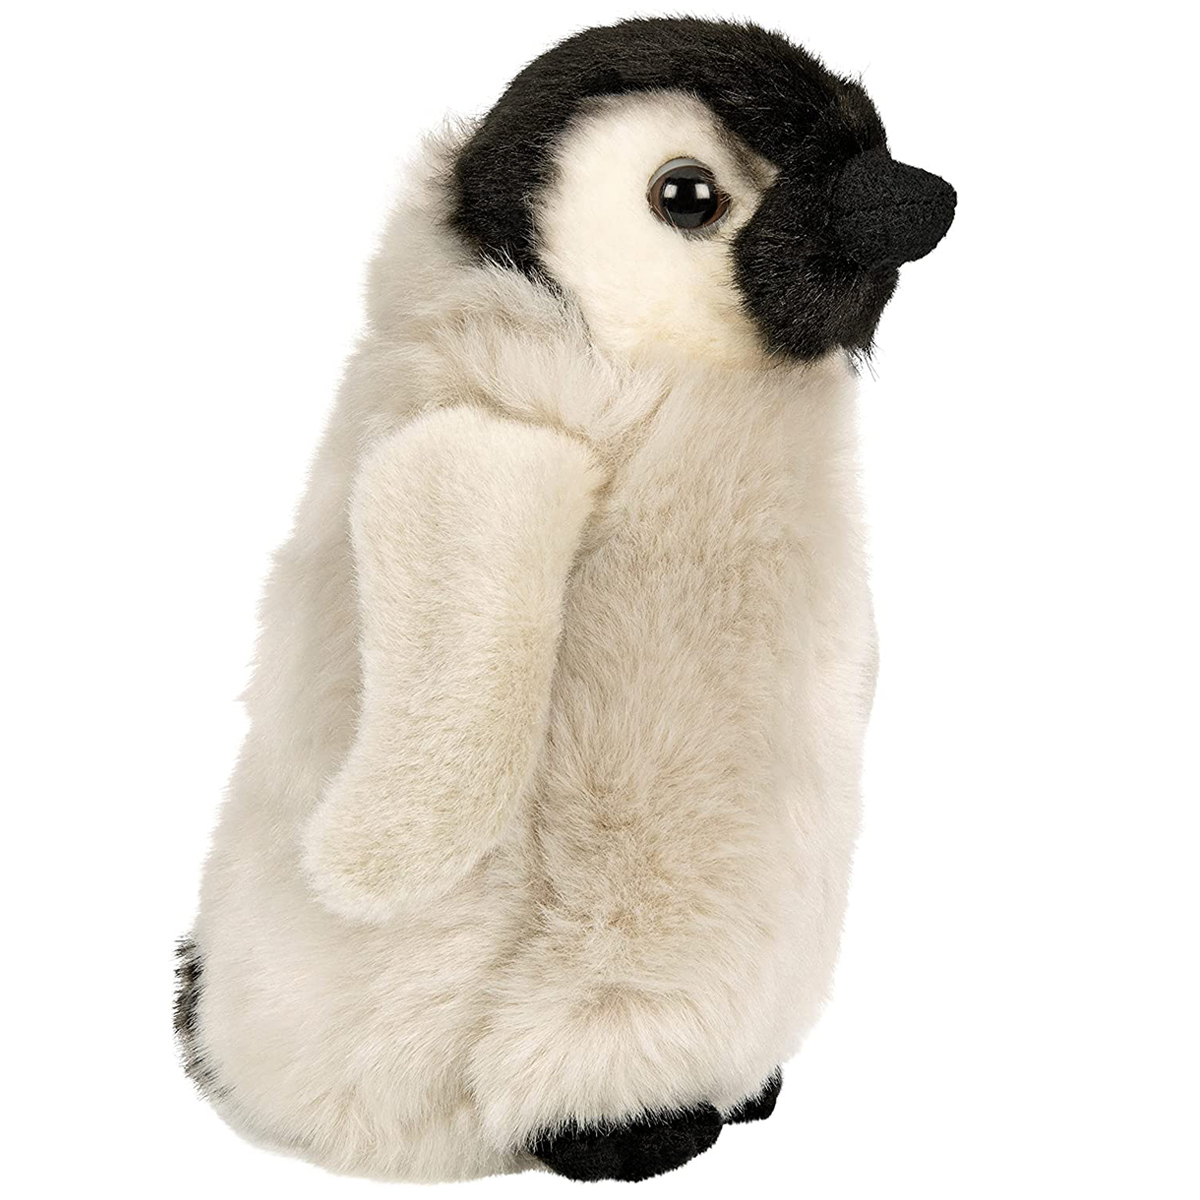  Pinguin-Baby - 19 cm 